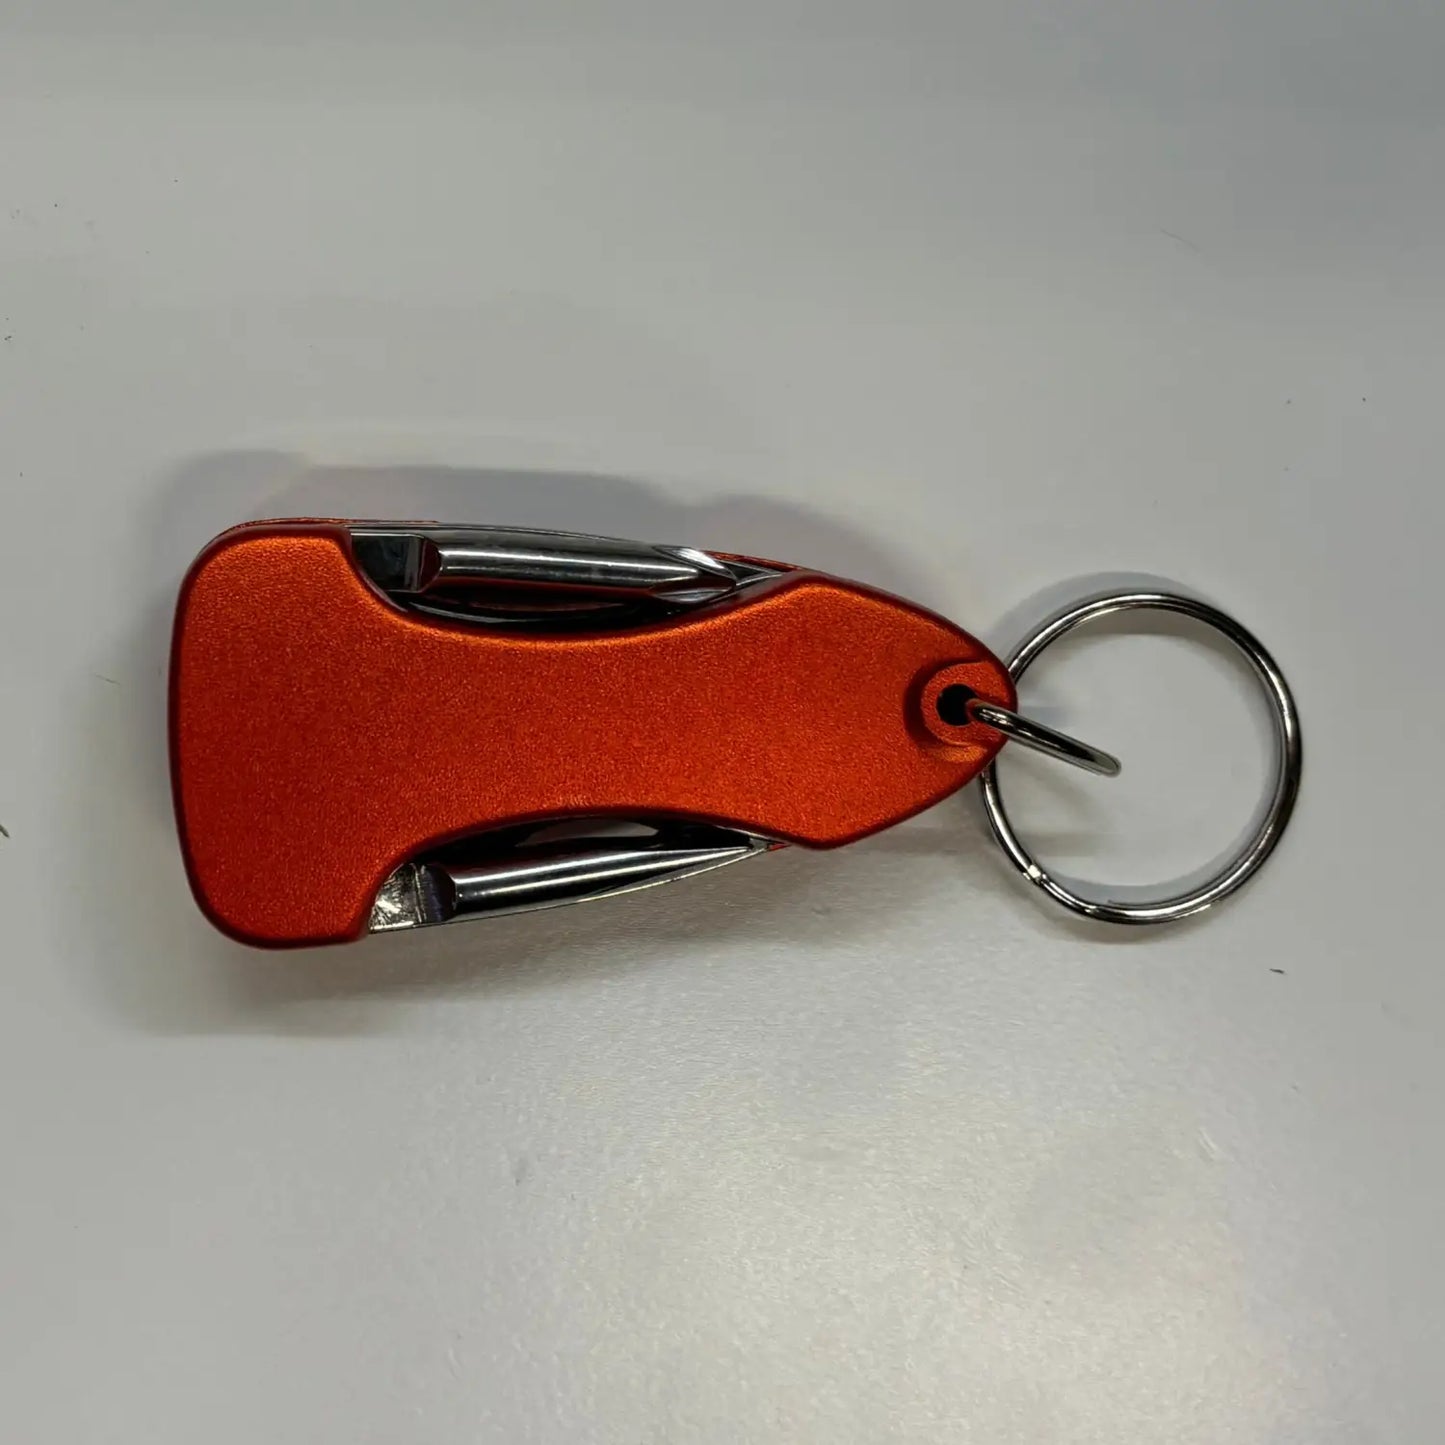 Multitool Keychain - Orange - Multitool